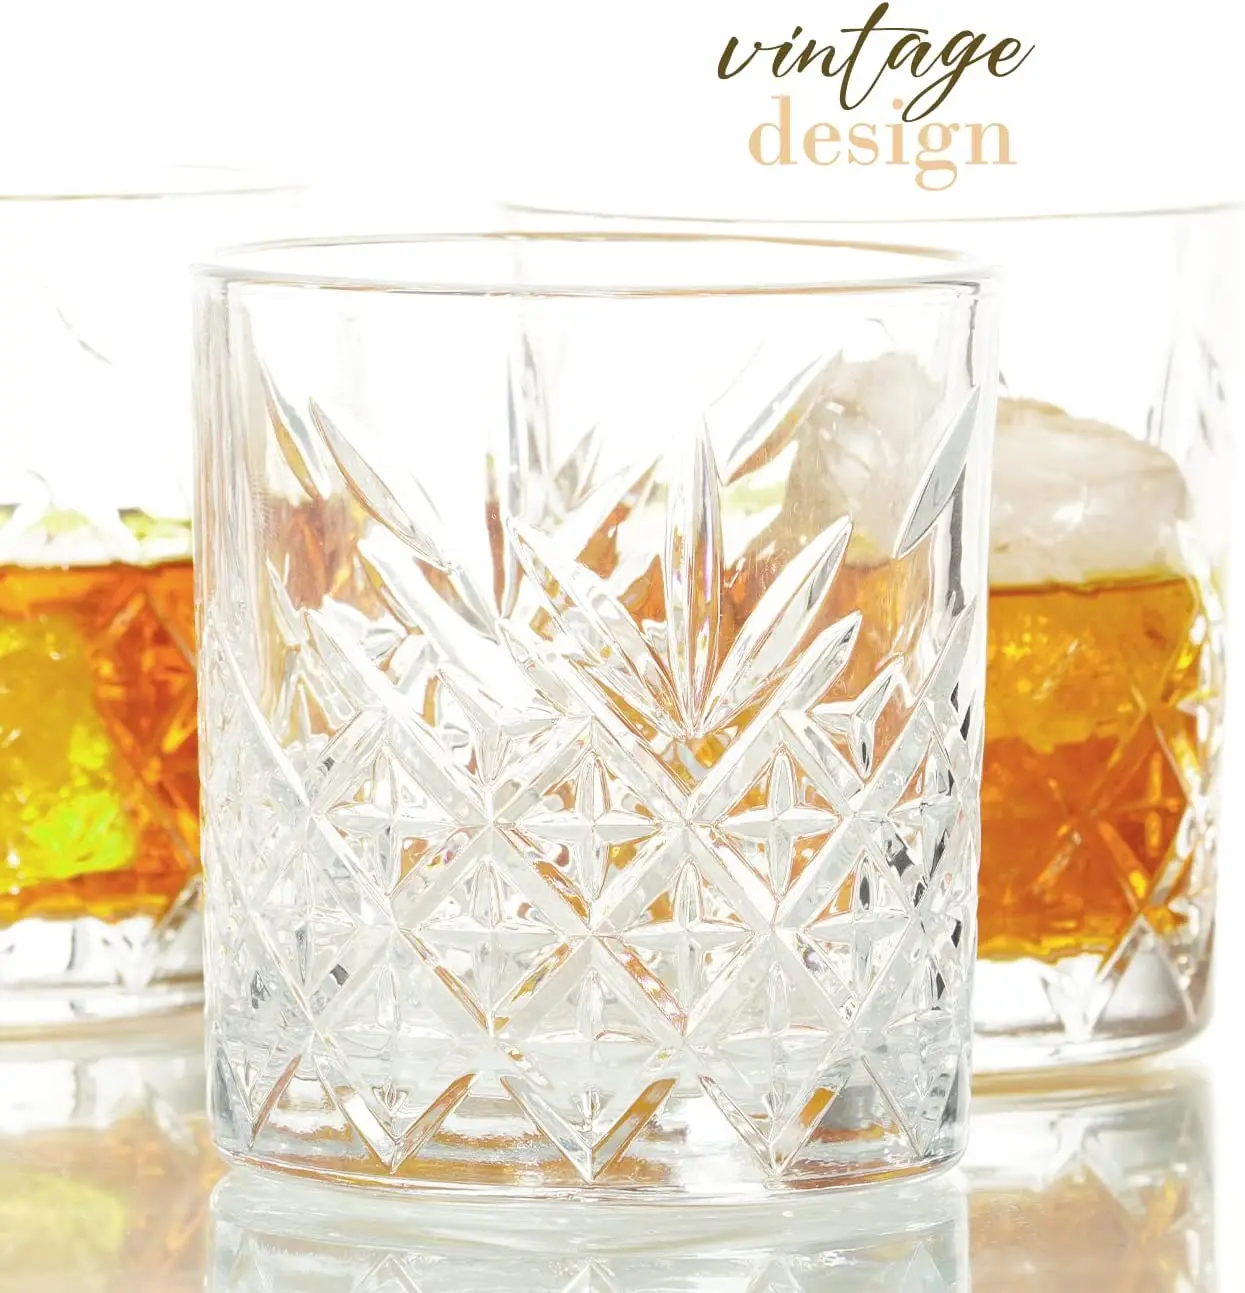 

Старомодные винтажные стаканы для виски, виски, Бурбона, ликера и коктейлей-набор из 4 шт. (345 мл/11,7 унции) Pasabahce